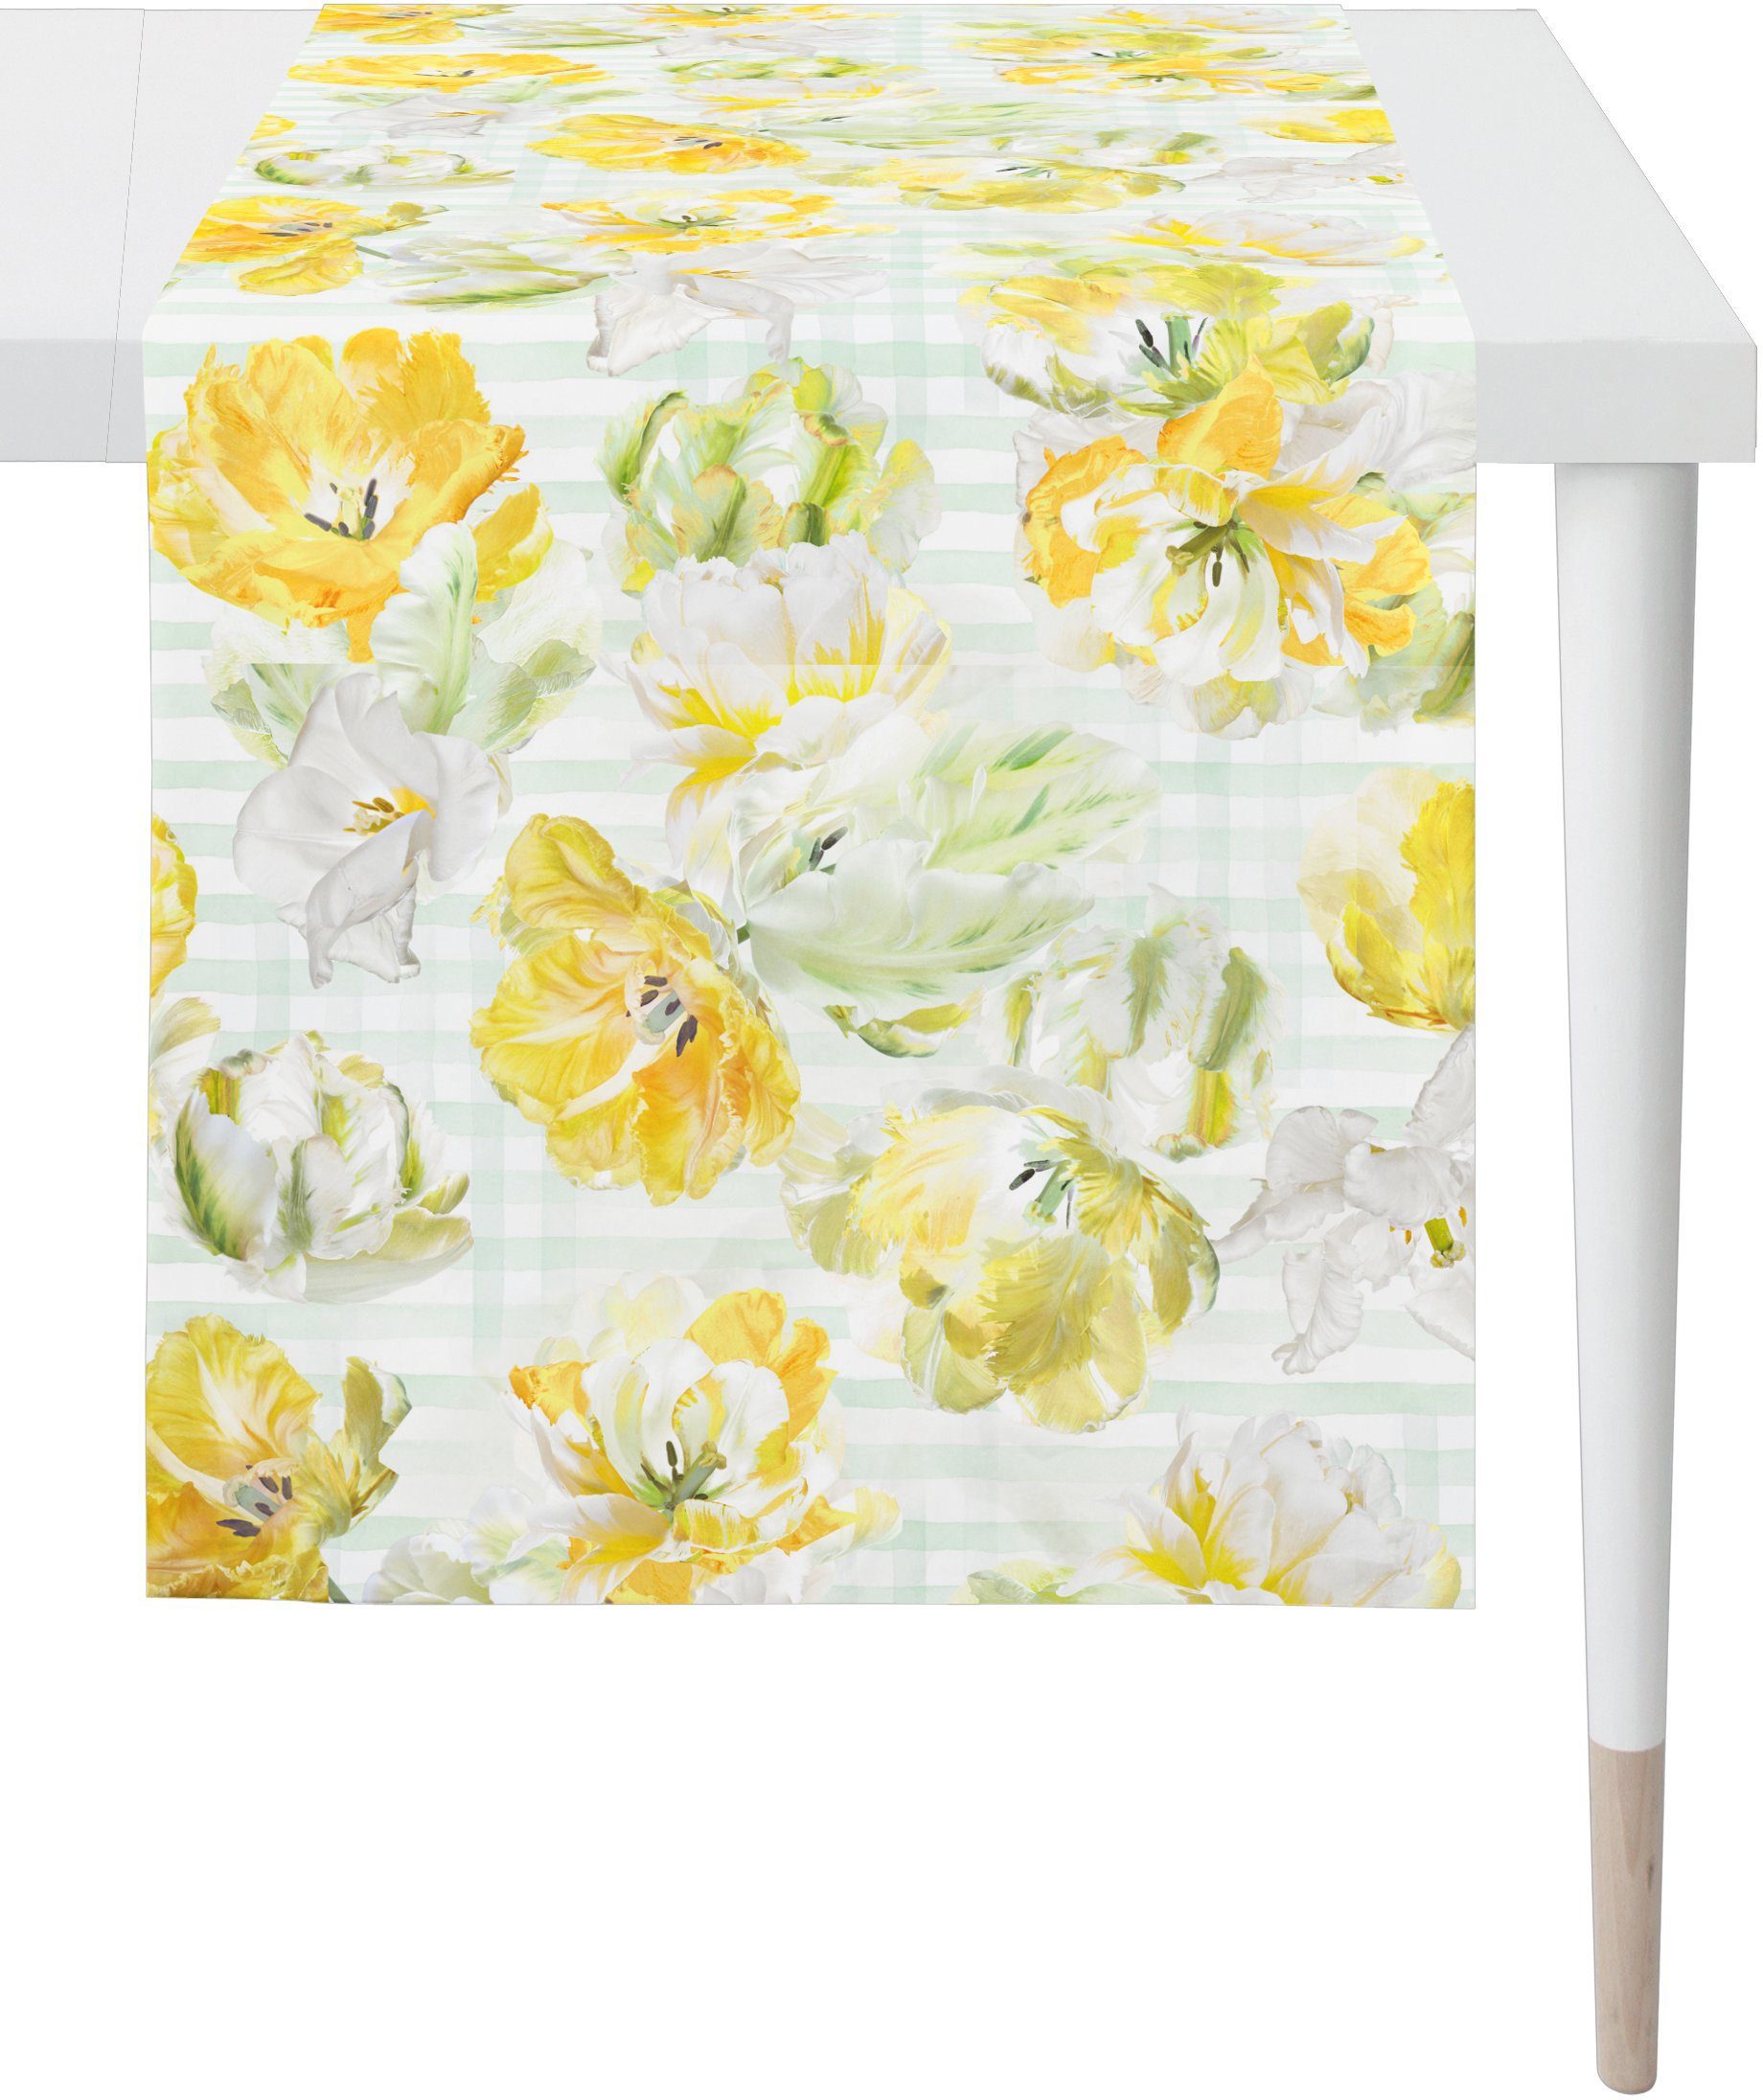 APELT Tischläufer 6405 SPRINGTIME, Digitaldruck (1-tlg), Frühling Frühjahrsdeko, weiß/gelb/natur